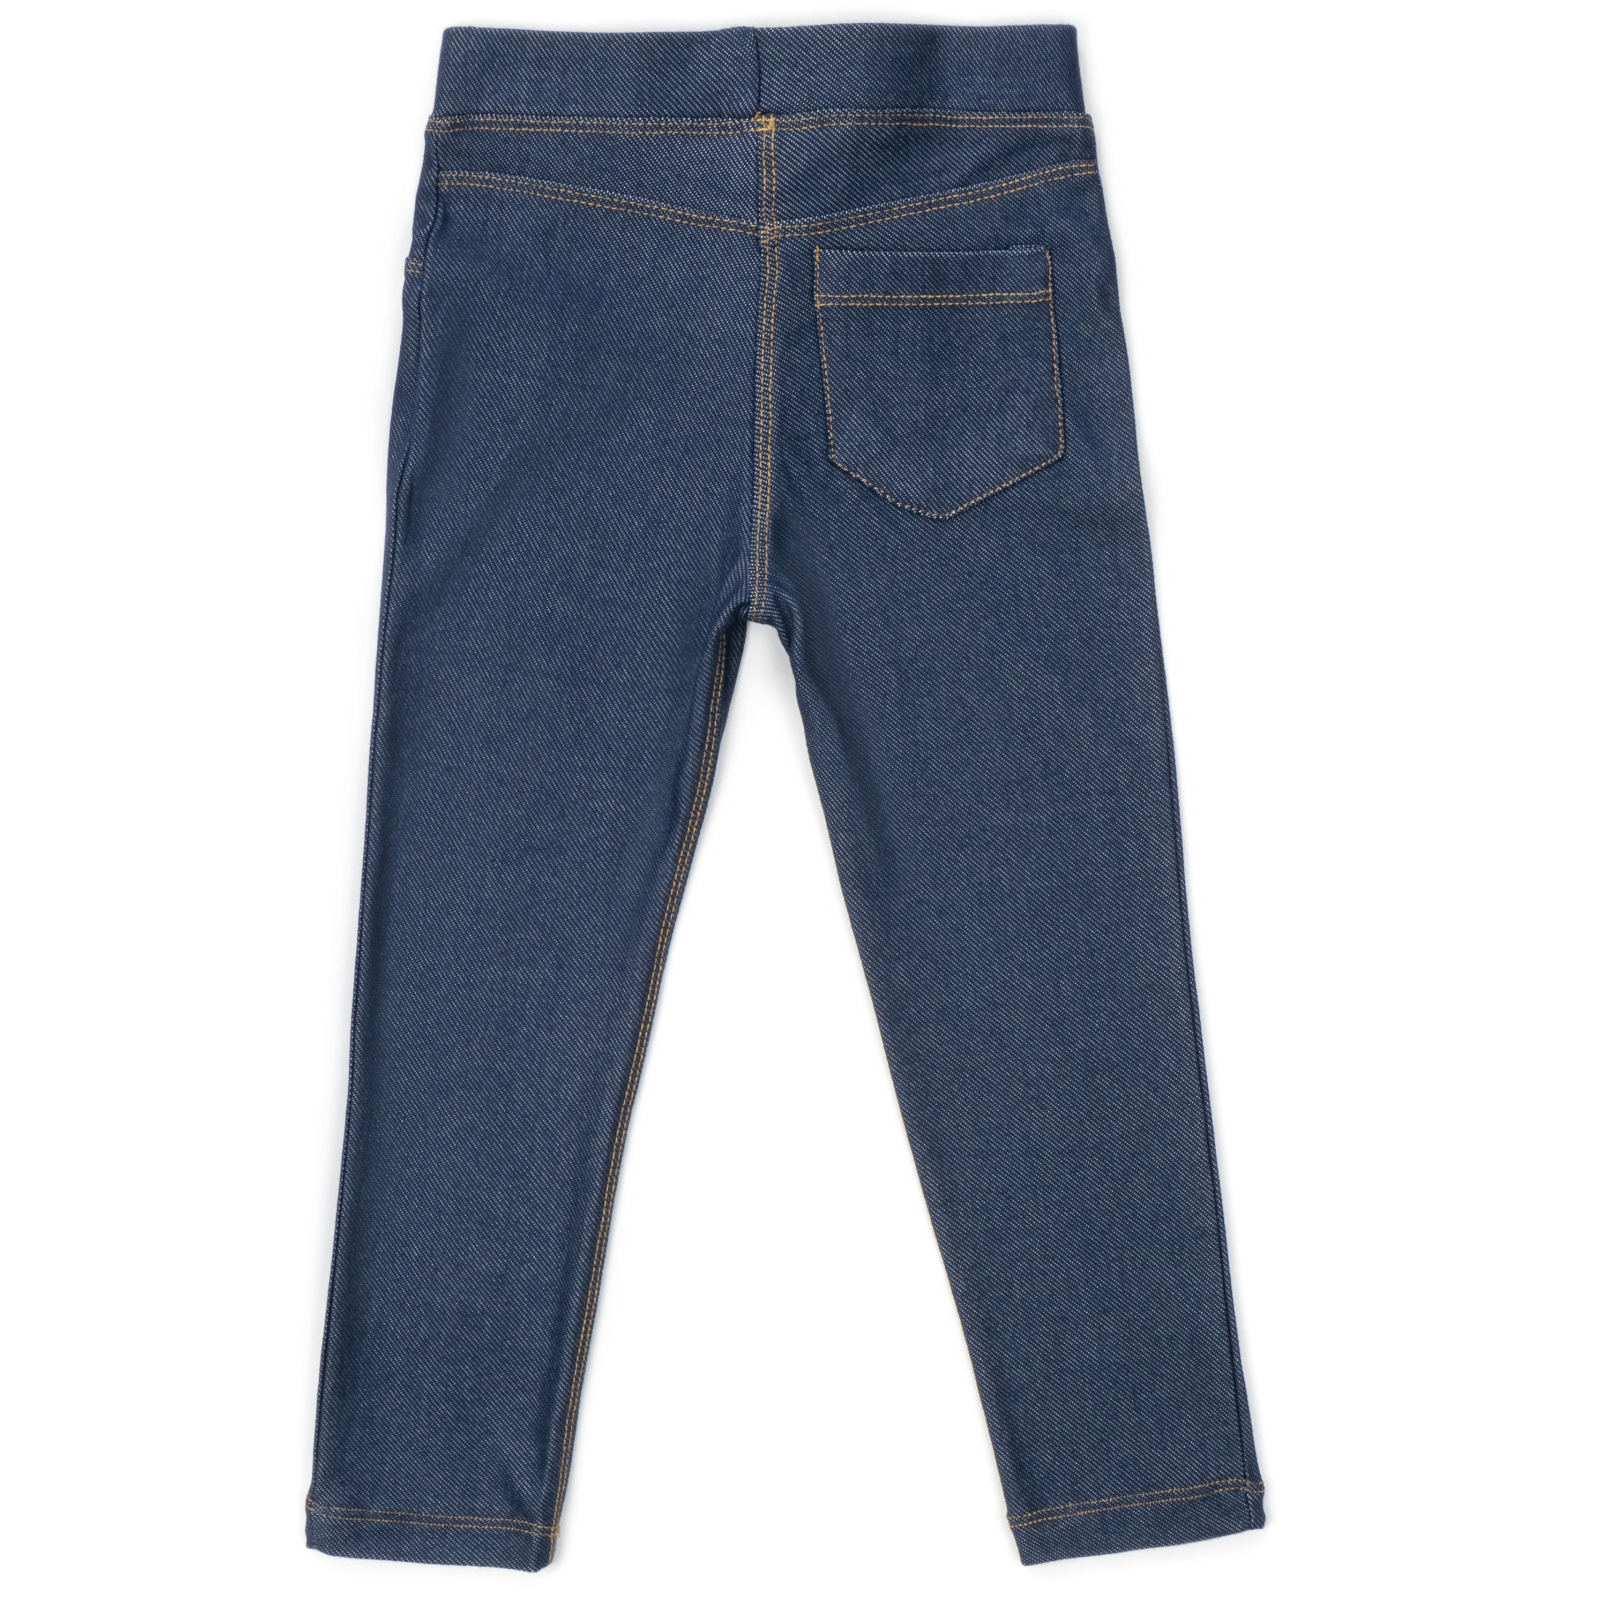 Лосины Breeze трикотажные (4416-122G-jeans) изображение 2